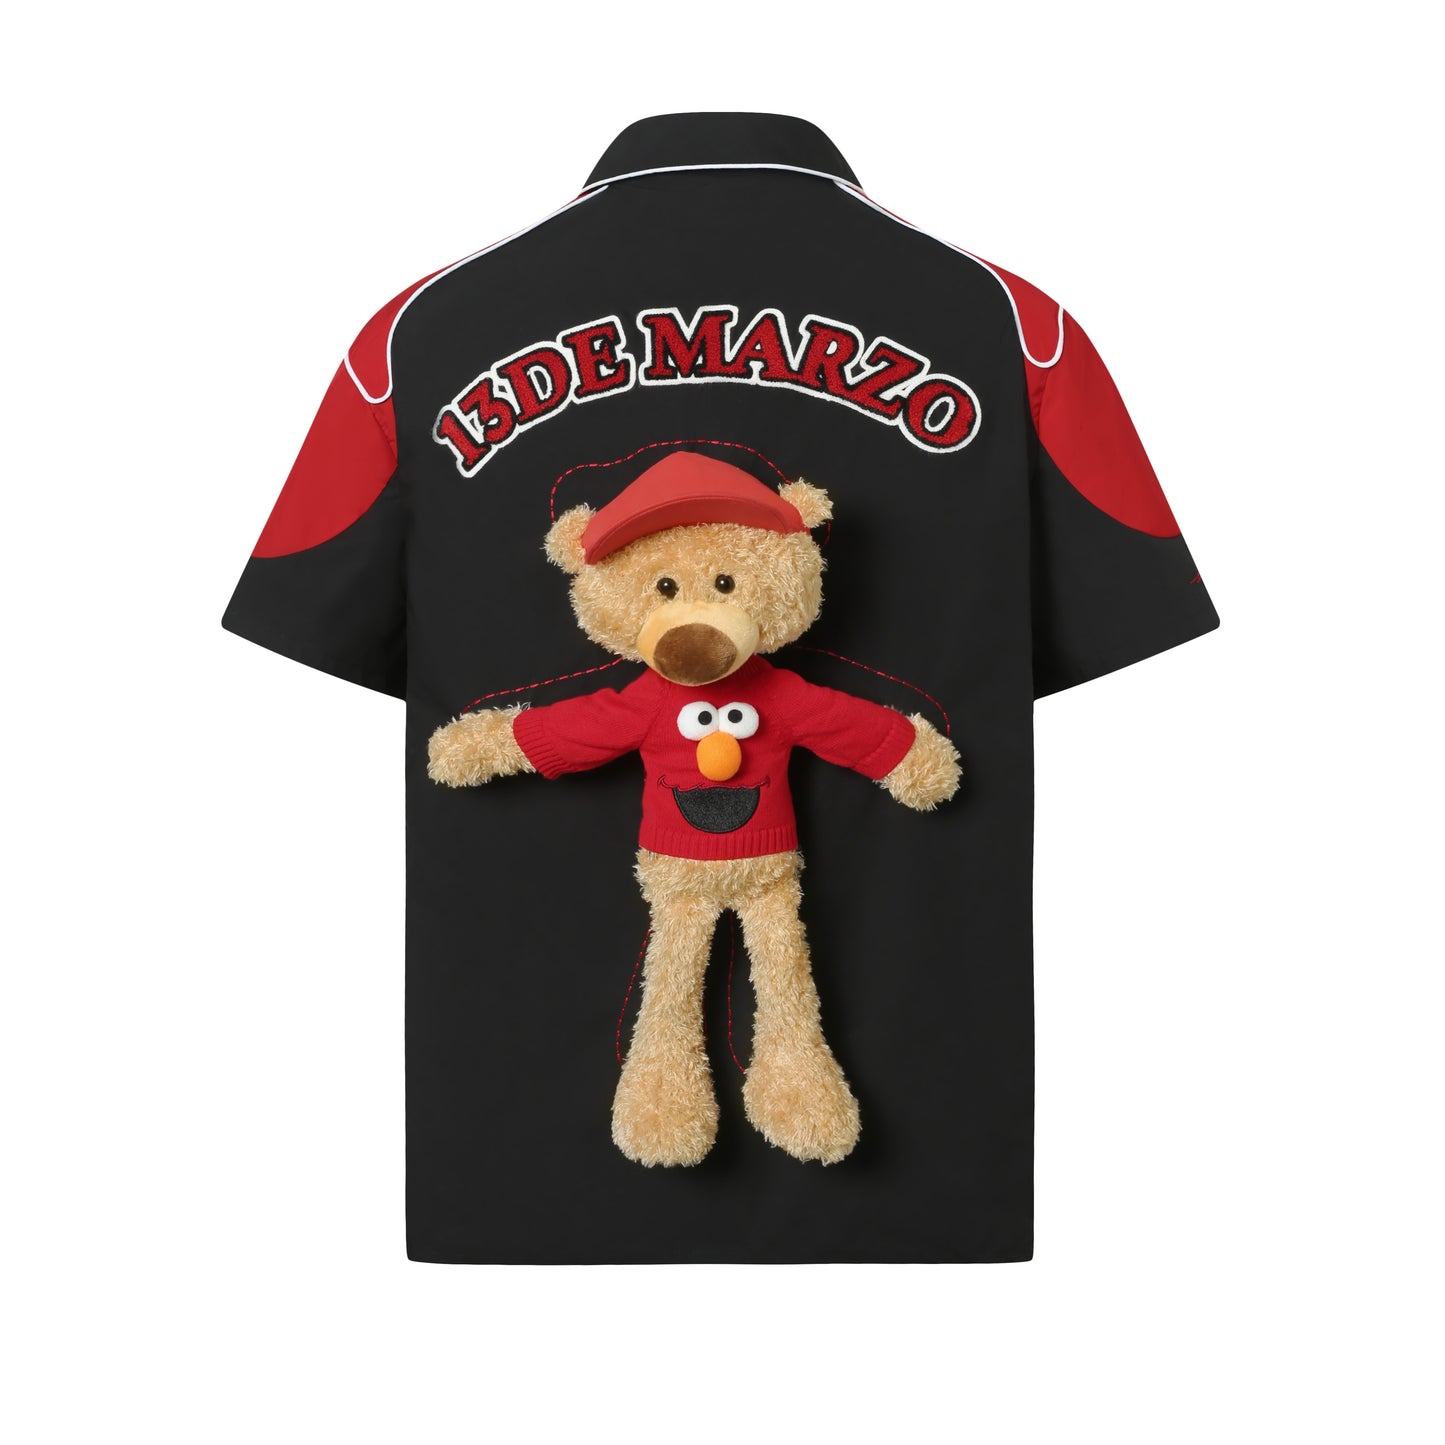 13DE MARZO Elmo Bear Racing Shirt